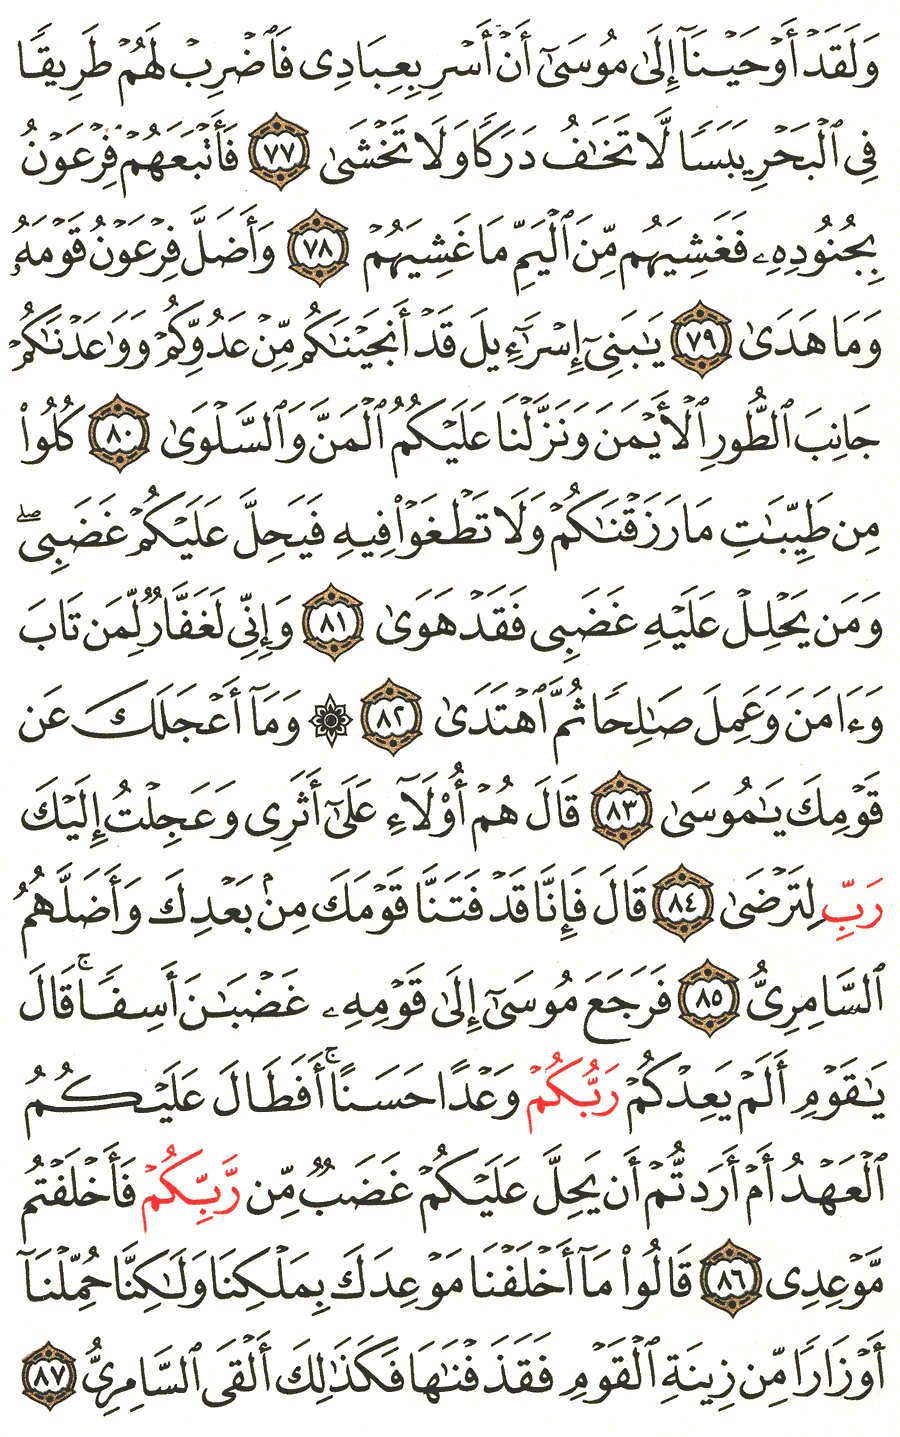 الصفحة 317 من القرآن الكريم